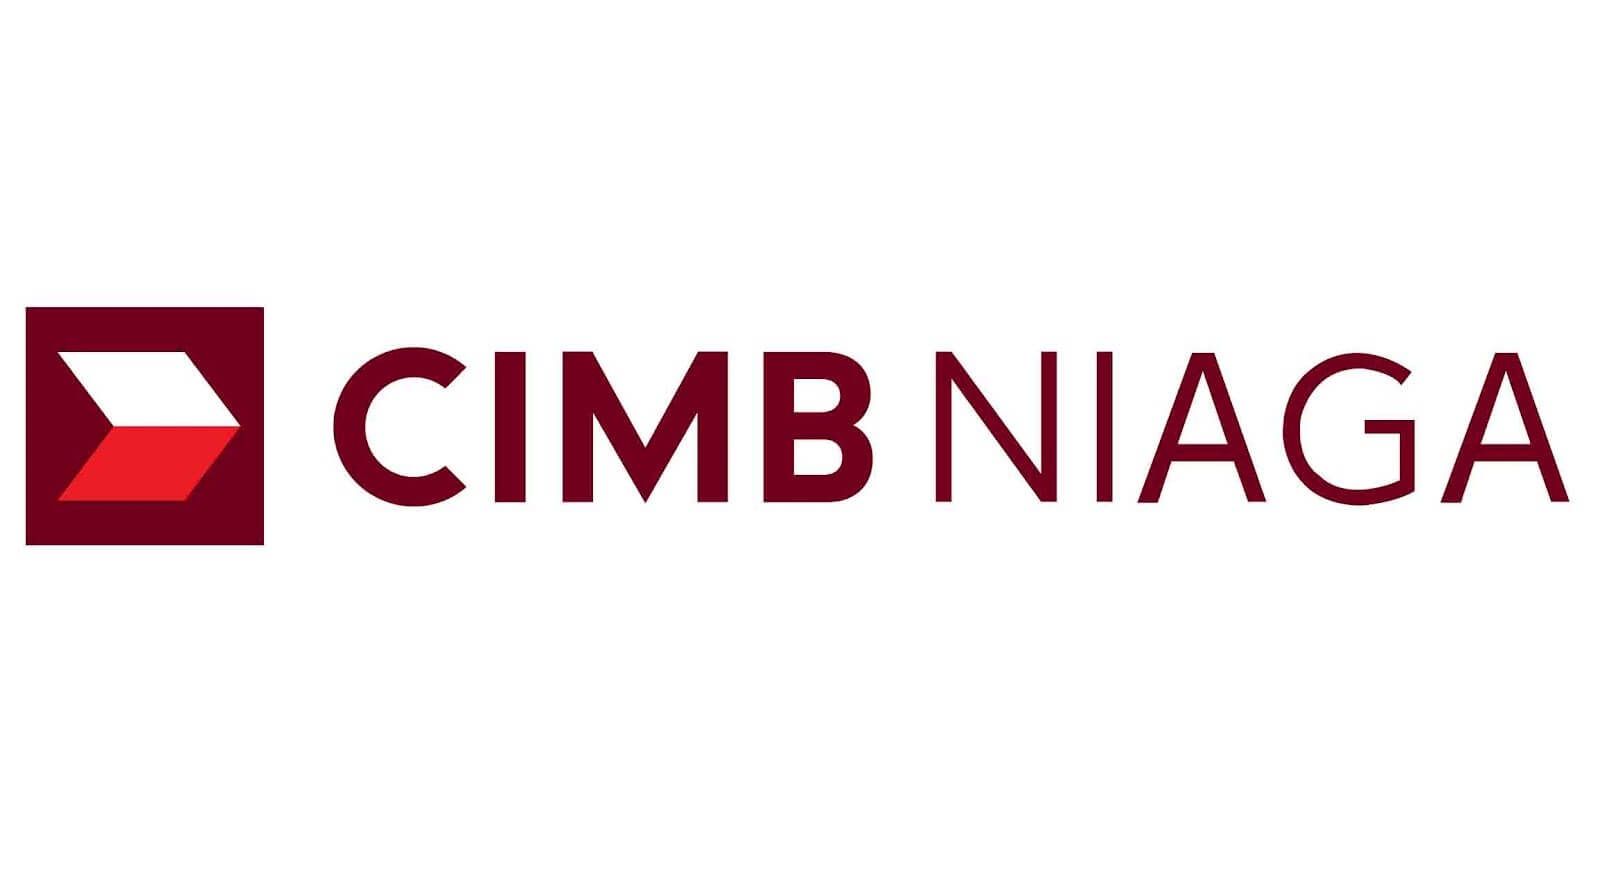 Bank CIMB Niaga - Update Saldo Minimal Rekening di Bank BRI BNI BCA dan Bank Lainnya